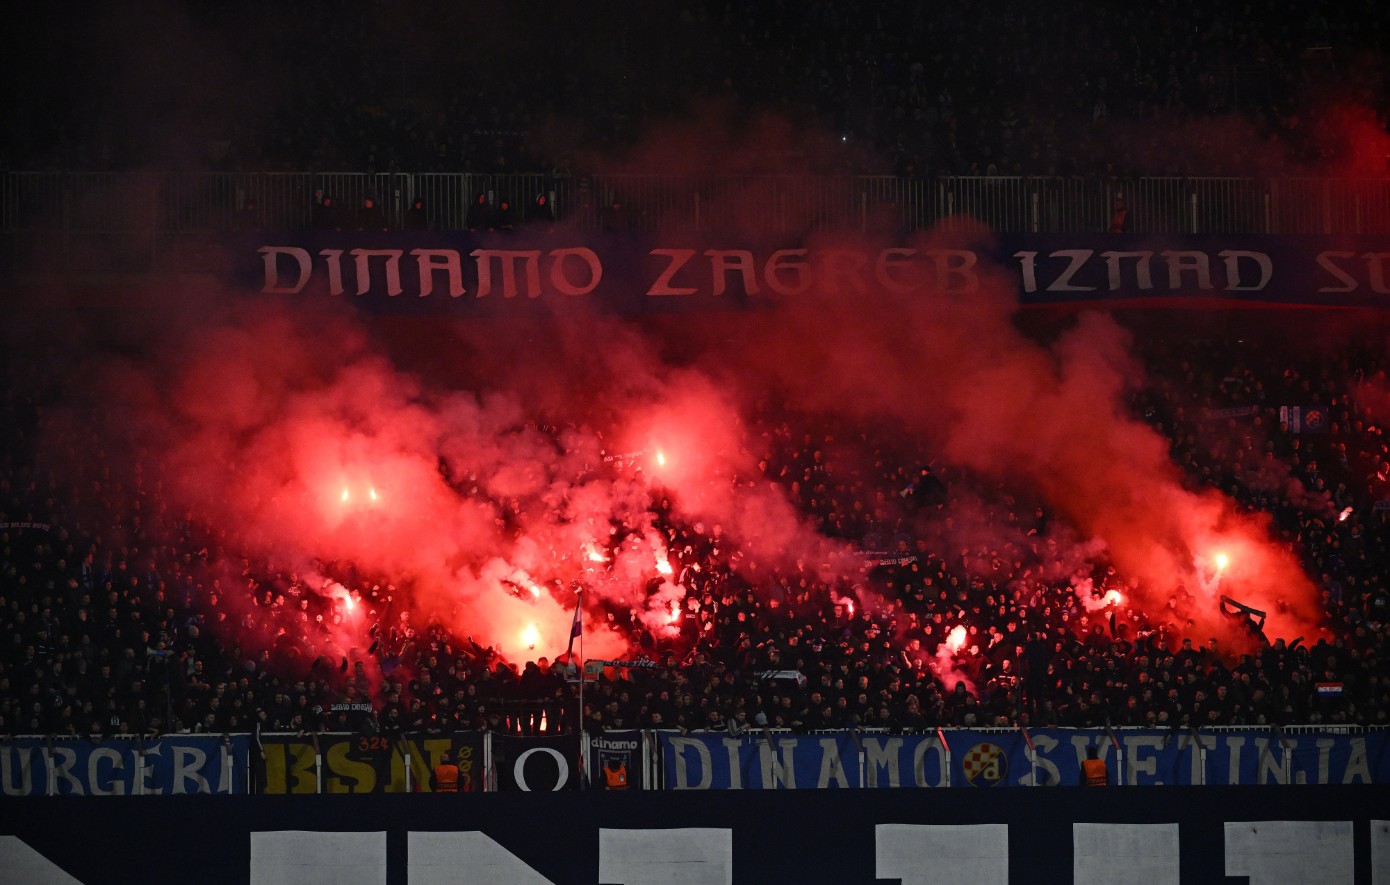 Πληροφορίες για κάθοδο οπαδών της Ντιναμό Ζάγκρεμπ στη Θεσσαλονίκη για το ματς με τον ΠΑΟΚ παρά την απαγόρευση της UEFA